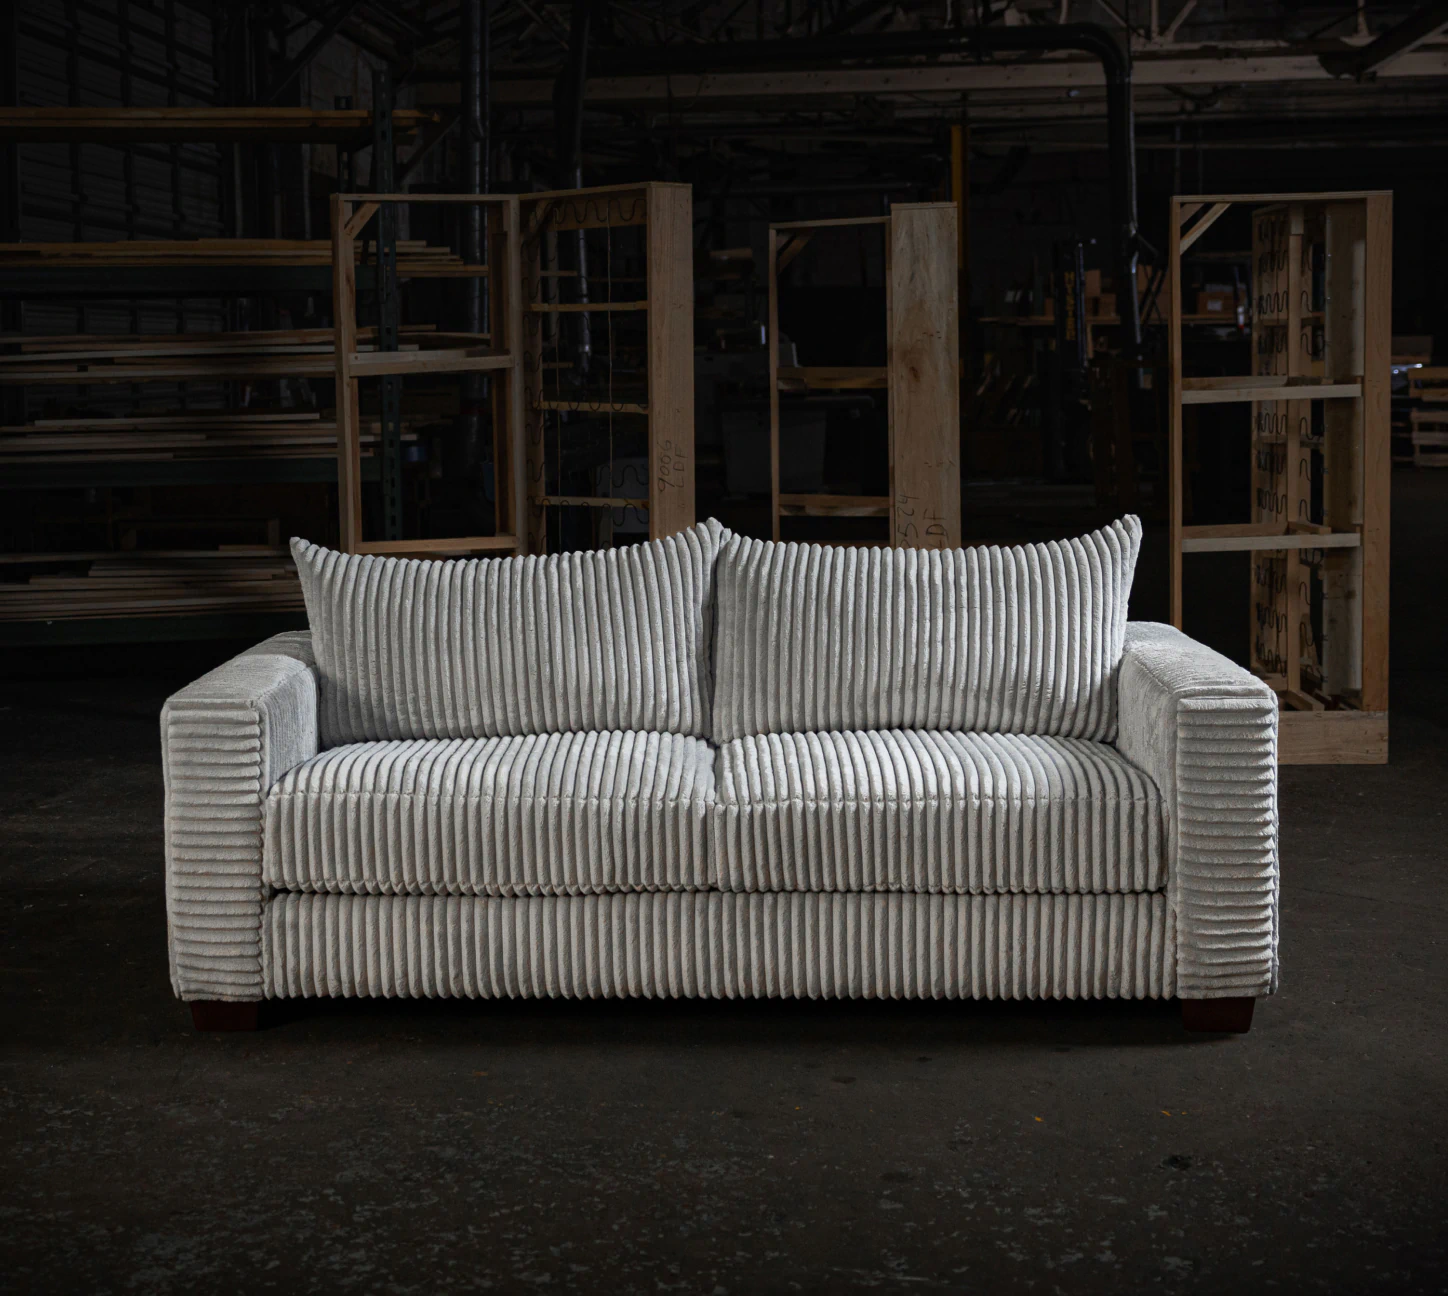 white couch in dark warehouse